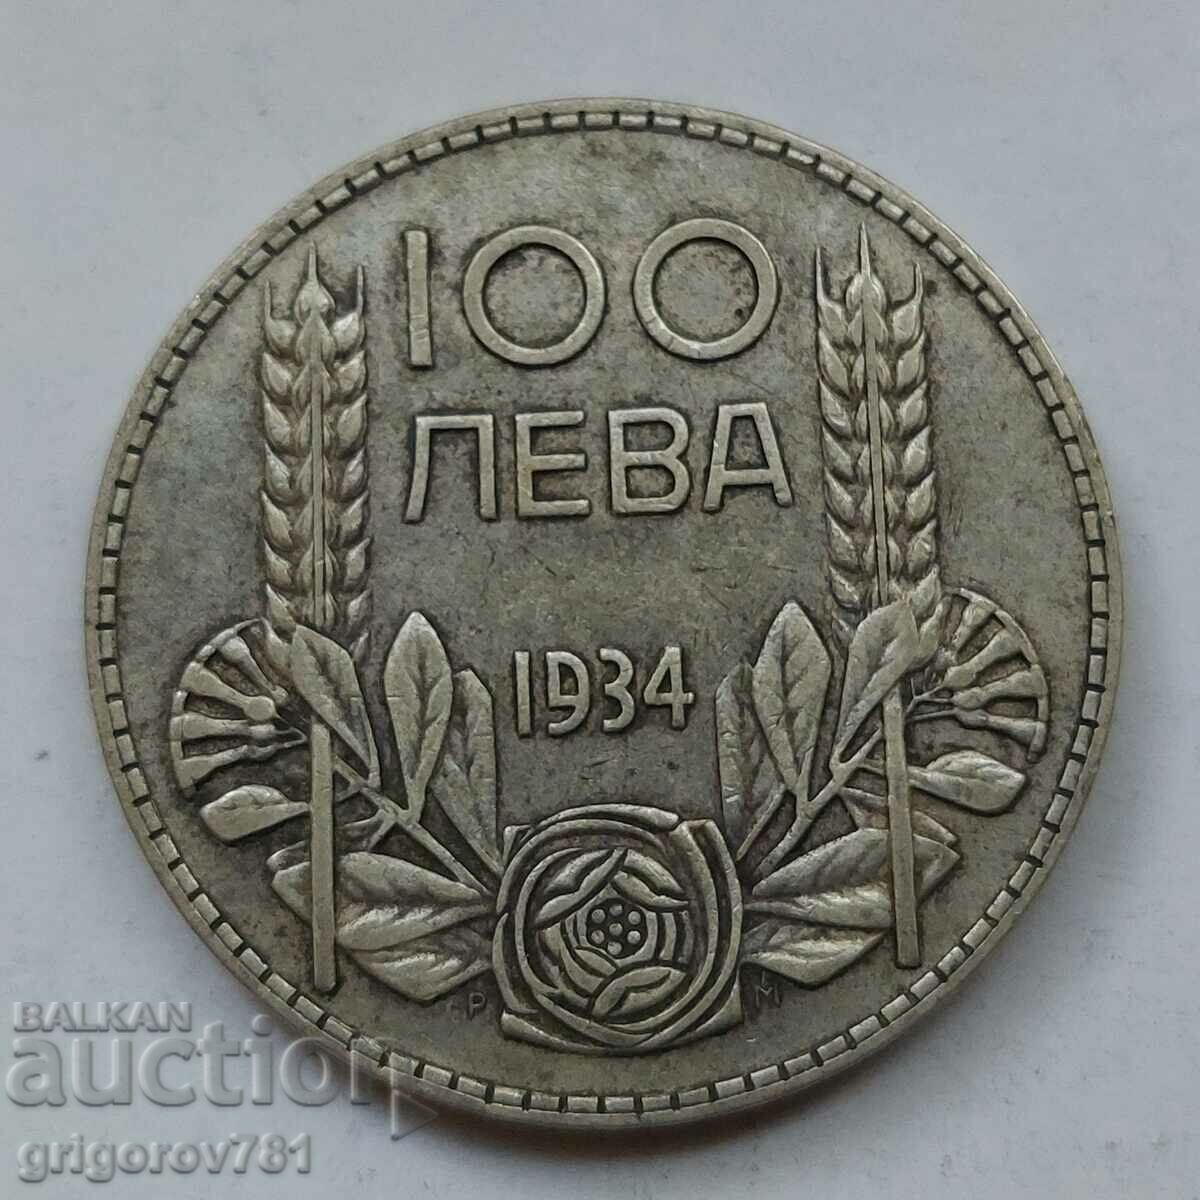 Ασήμι 100 λέβα Βουλγαρία 1934 - ασημένιο νόμισμα #66